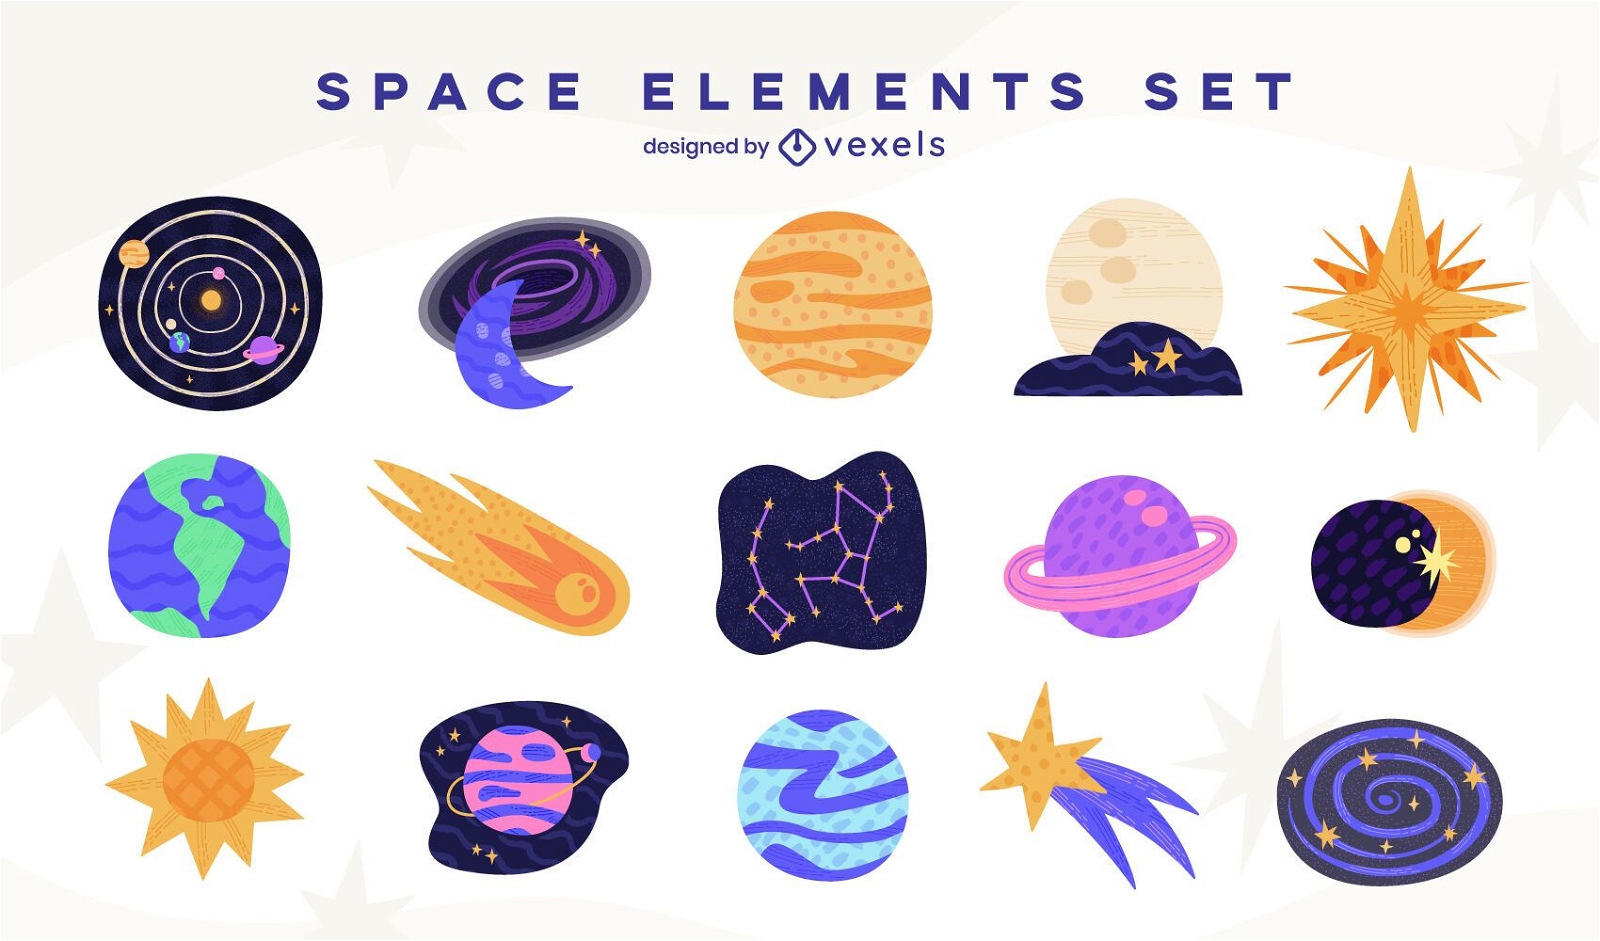 Space elements set